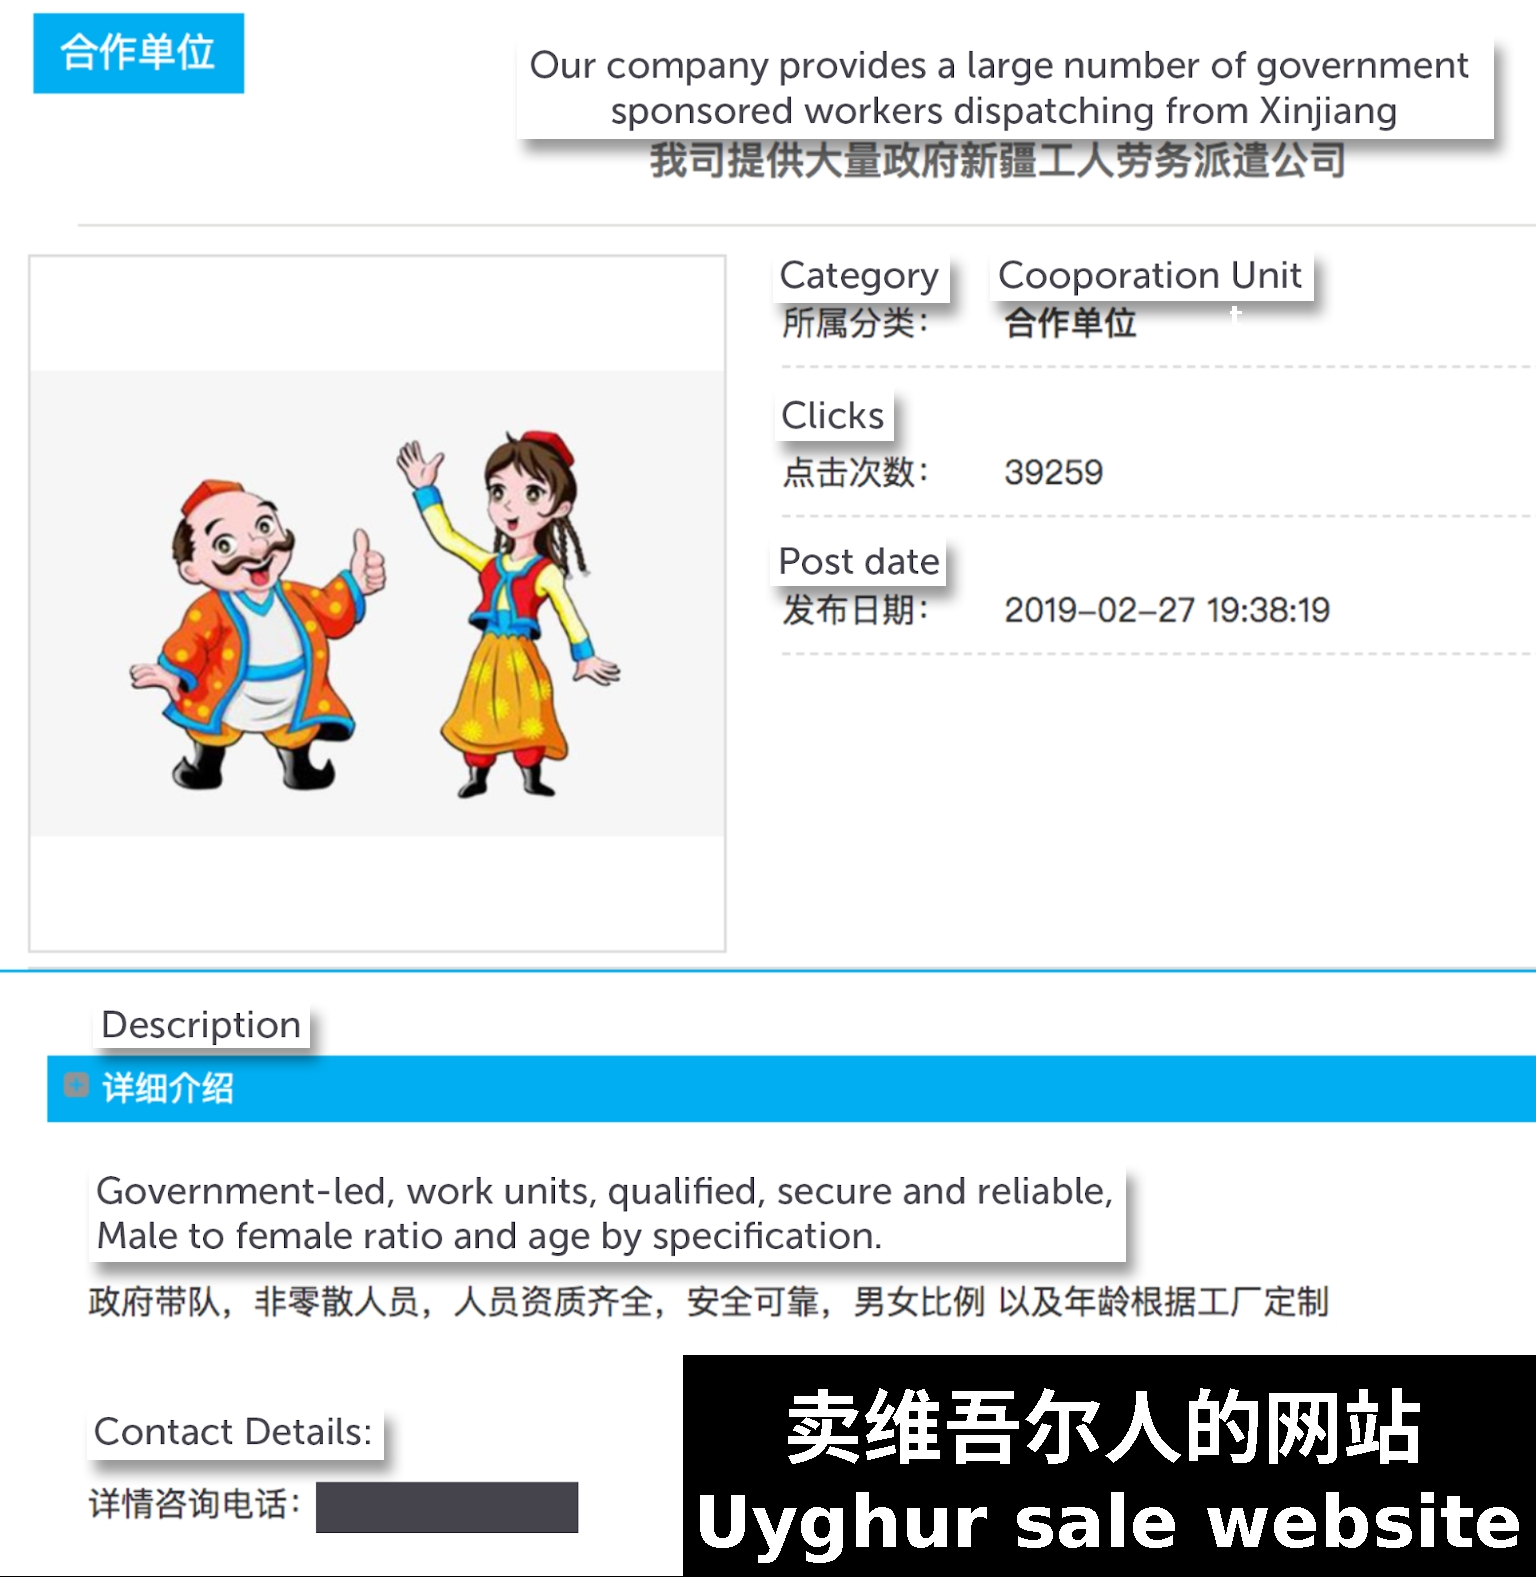 Uyghur sale website